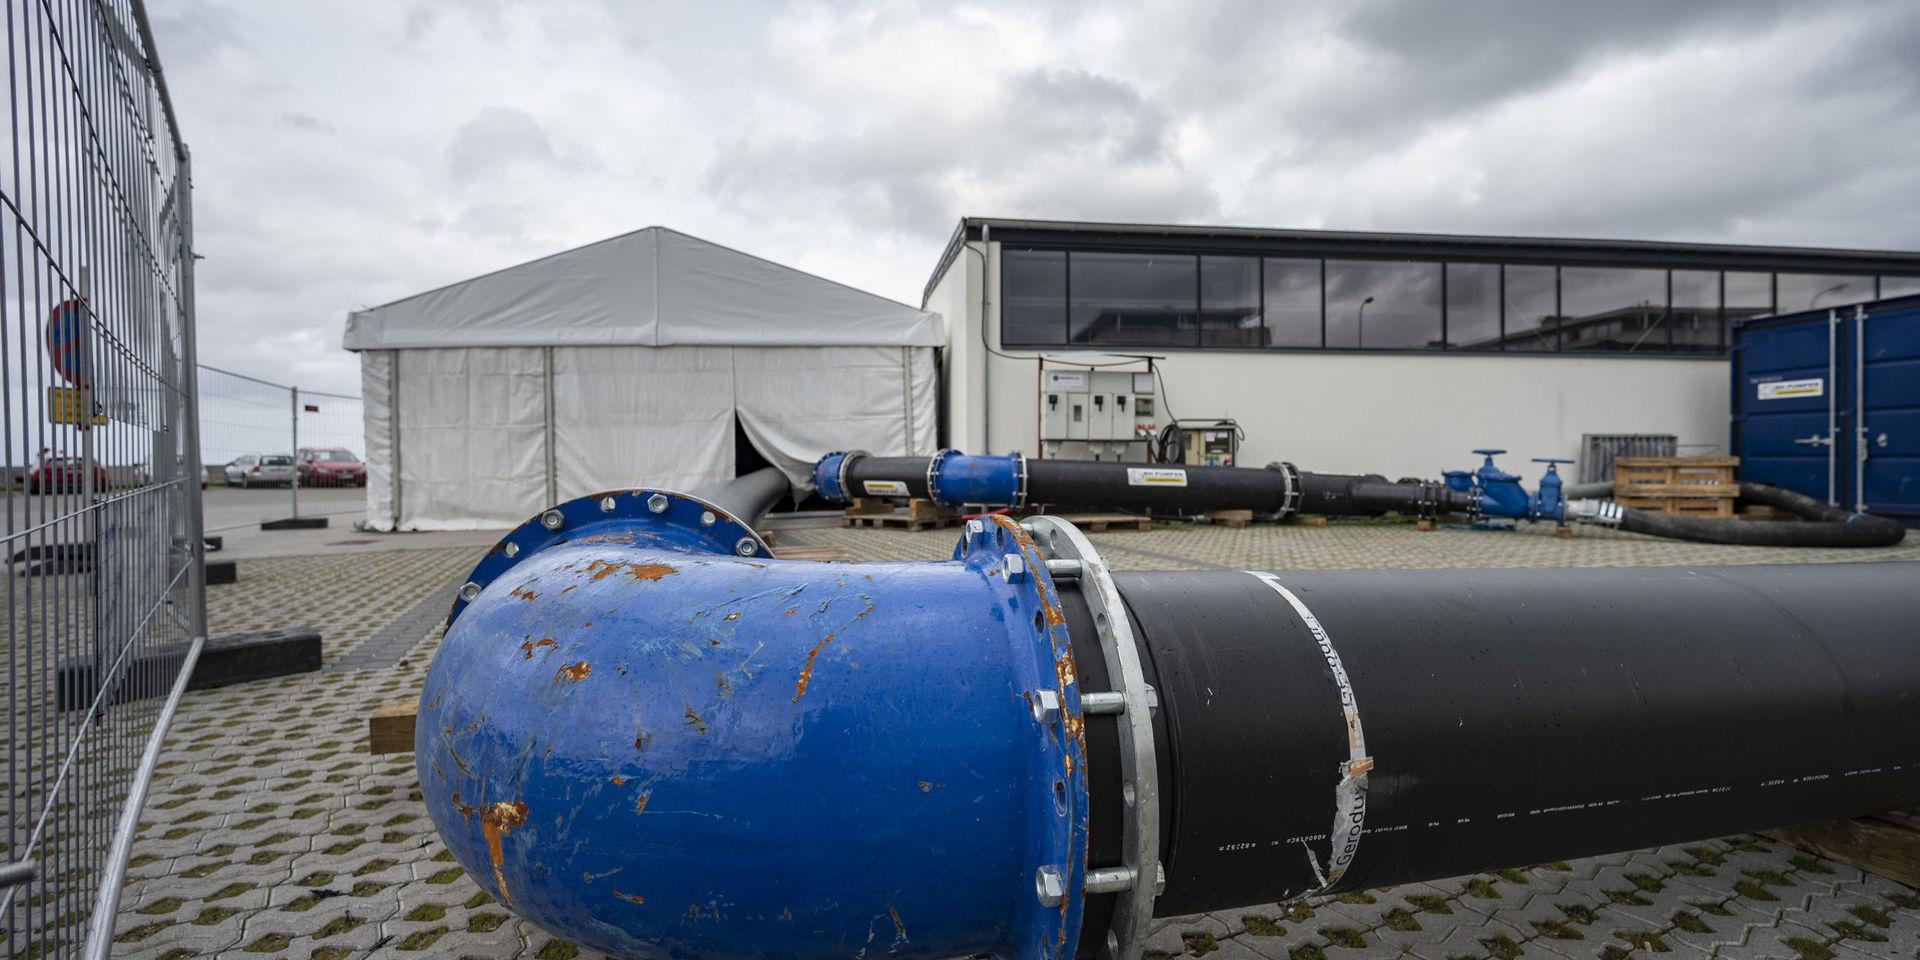 Avloppsrör vid pumpstationen i hamnen i Skovshoved norr om Köpenhamn. Härifrån var det tänkt att 290 000 kubikmeter avloppsvatten skulle pumpas ut i Öresund. Nu avslöjar TV2 Lorry att betydligt större mängder orenat avloppsvatten har släppts ut i Öresund de senaste åren. 